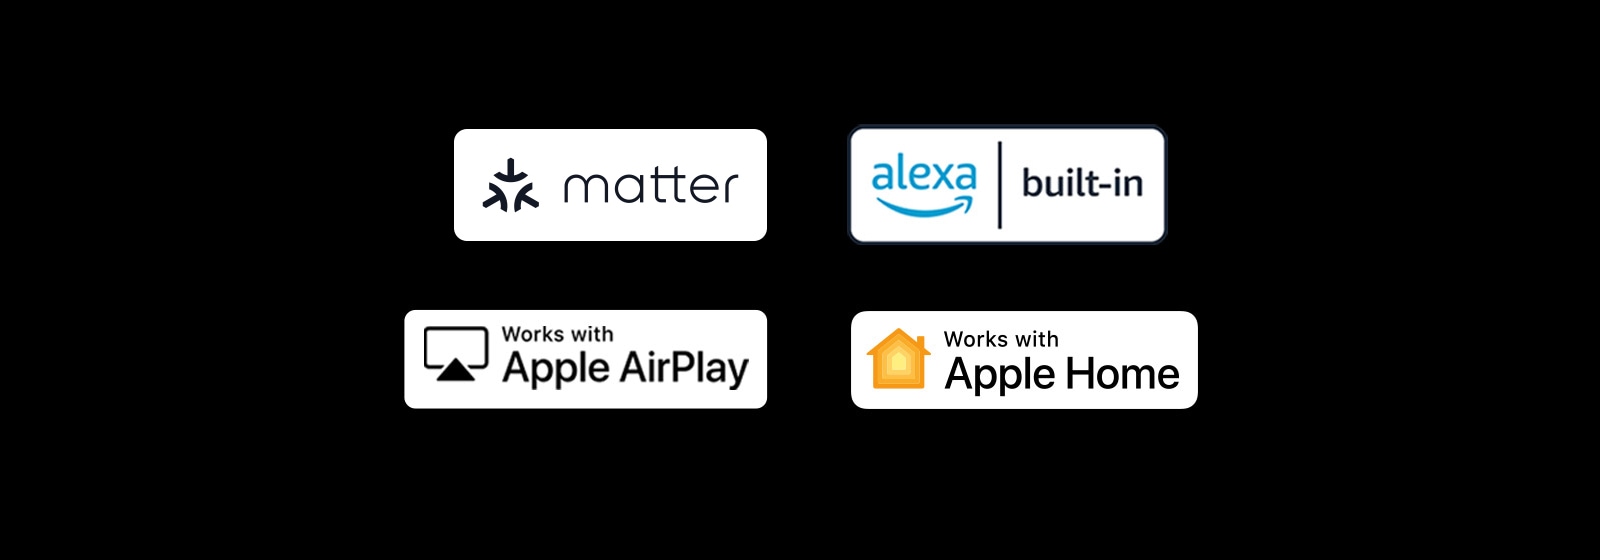 'Logo của alexa được tích hợp sẵn Logo của các tác phẩm với Apple AirPlay Logo của các tác phẩm với Apple Home Logo của các tác phẩm với Matter'